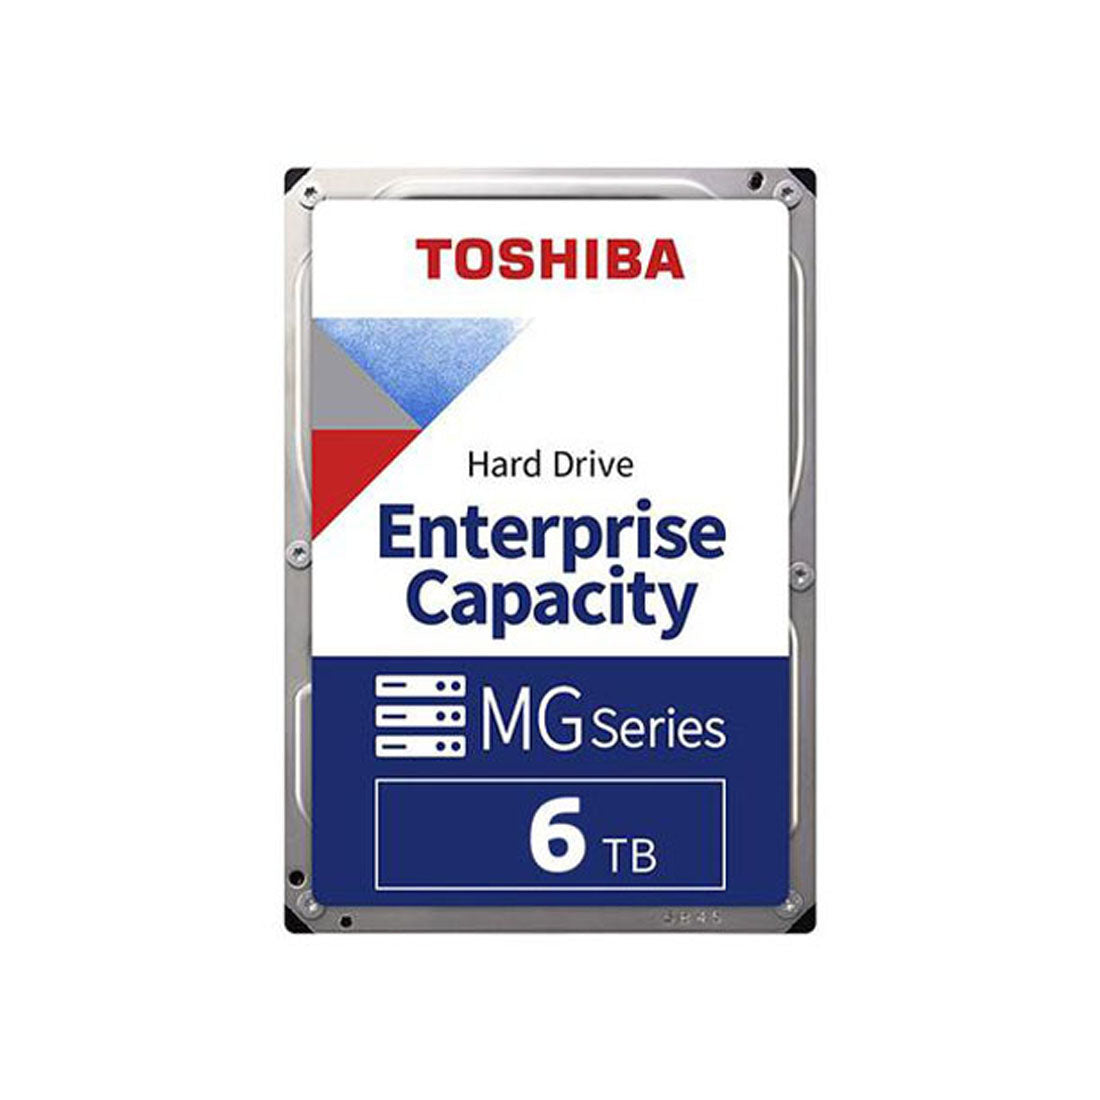 Toshiba 6TB एंटरप्राइज क्षमता 3.5 इंच SATA इंटरनल हार्ड ड्राइव 7200 rpm के साथ 